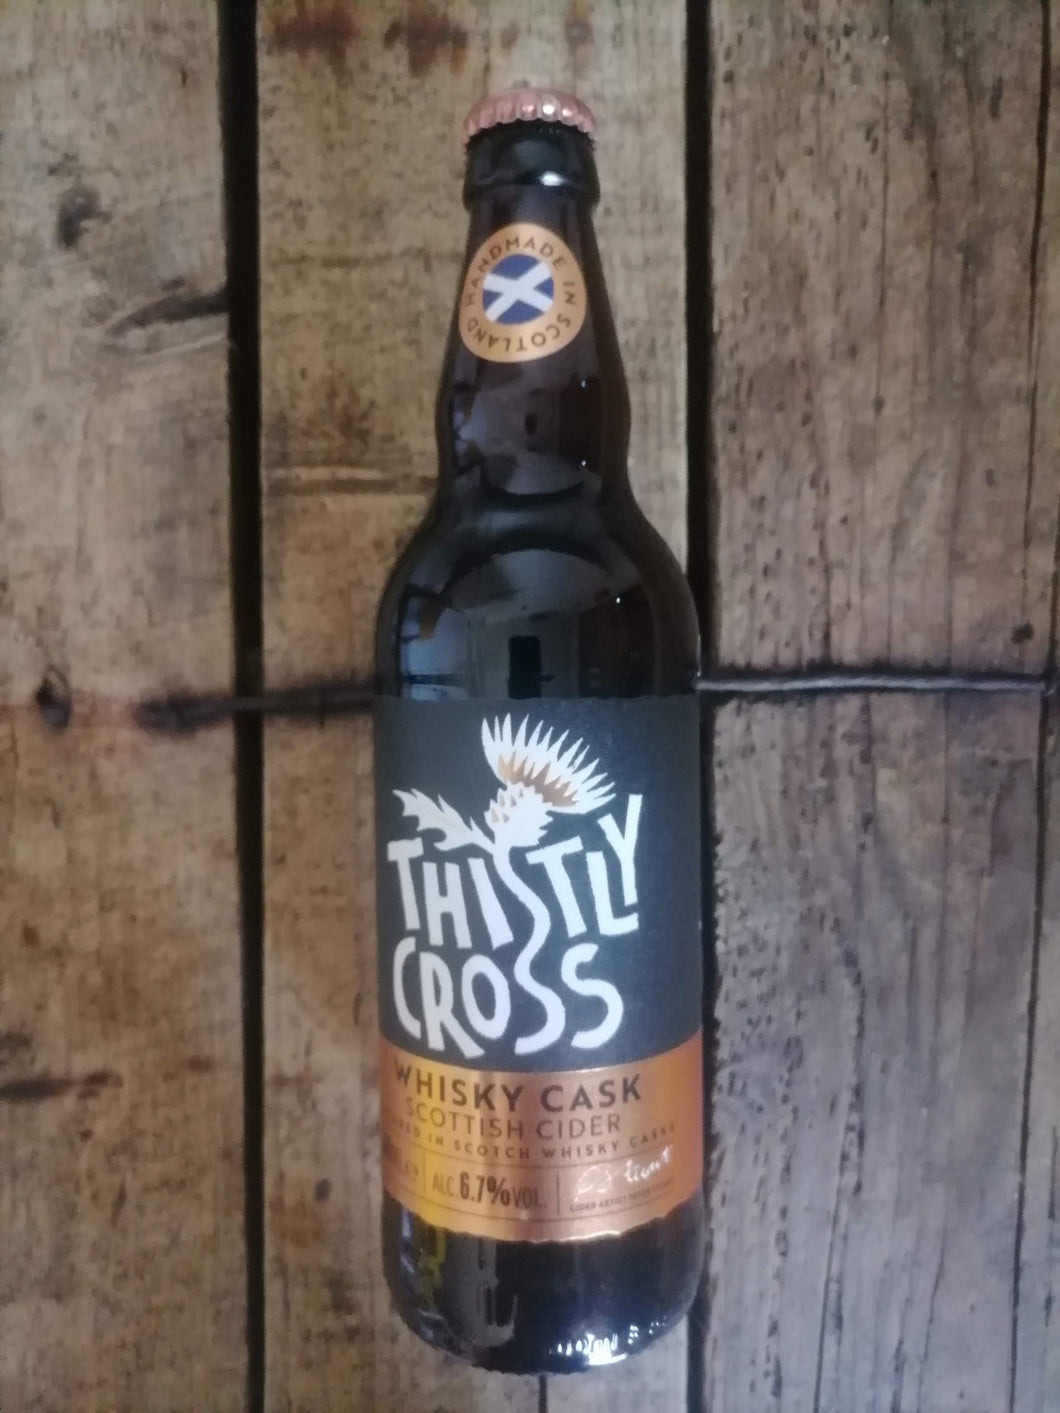 Thistly Cross Whisky Cask 6.7% (500ml bottle)